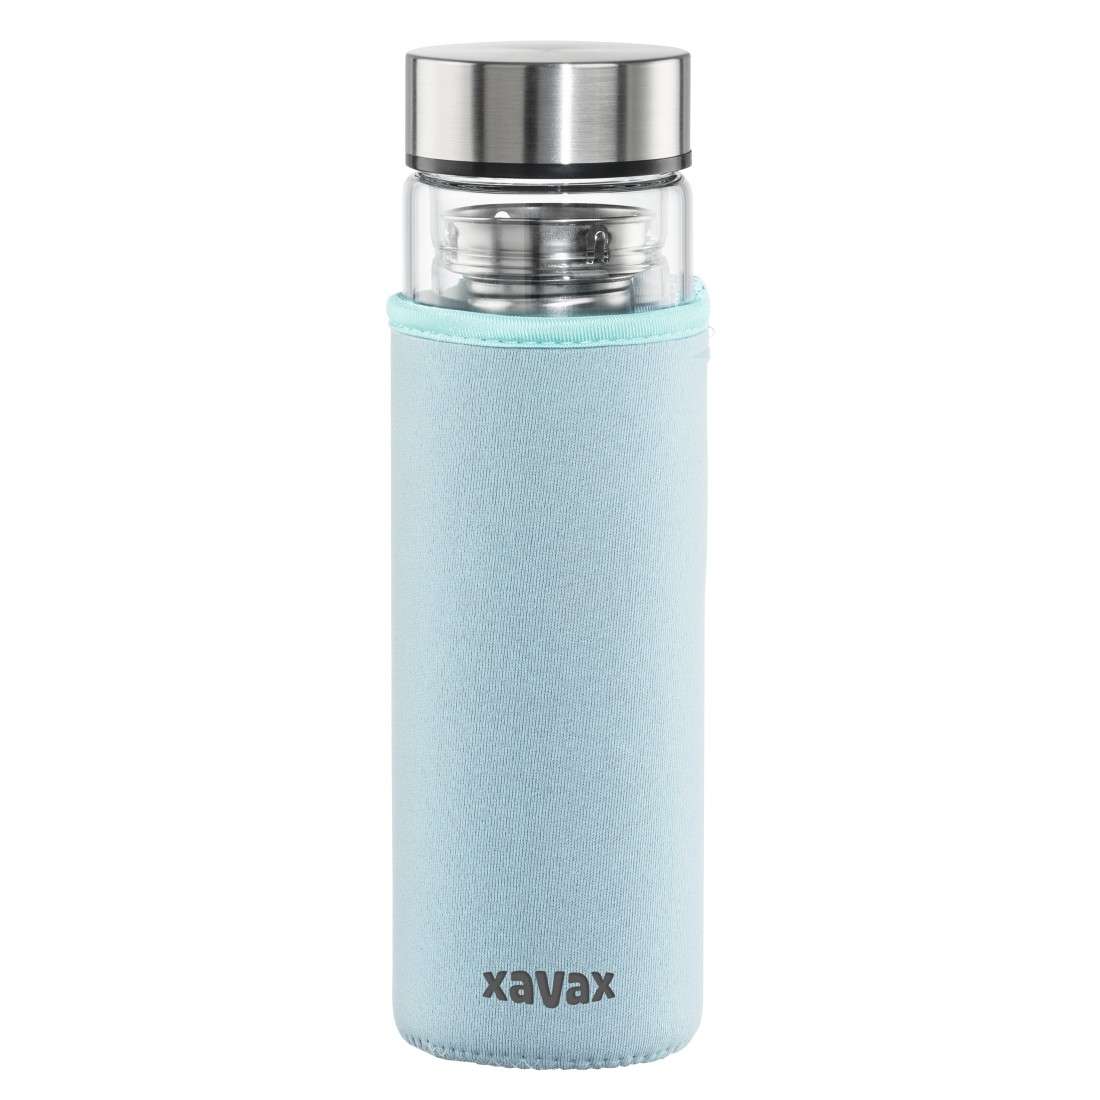 XAVAX Glasflasche, 450 ml, mit Schutzhülle, Einsatz, für Kohlensäure u. heiß/kalt